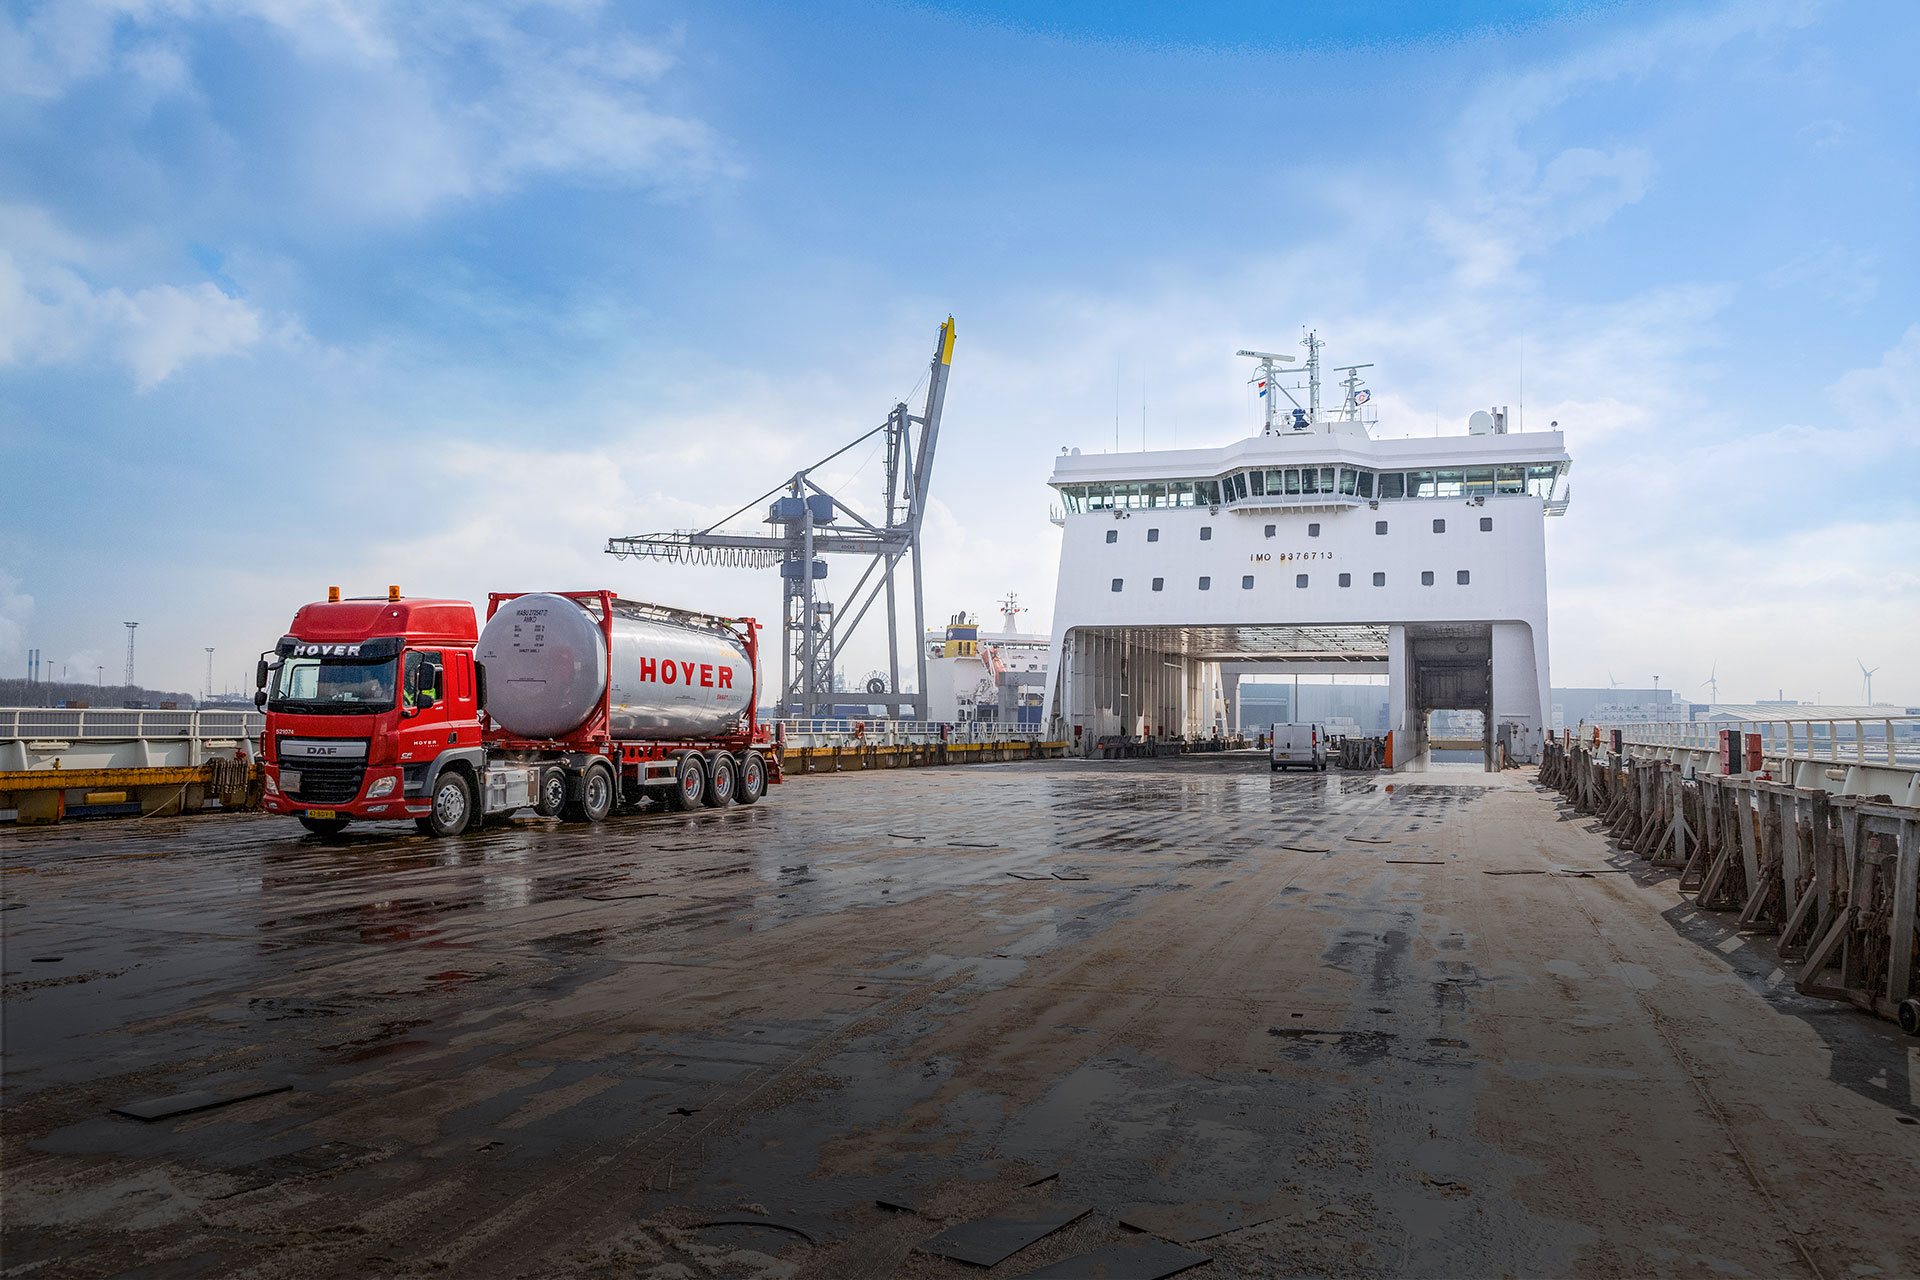 HOYER Lkw am Hafen mit grauem Chemie-Tankauflieger smart logistics